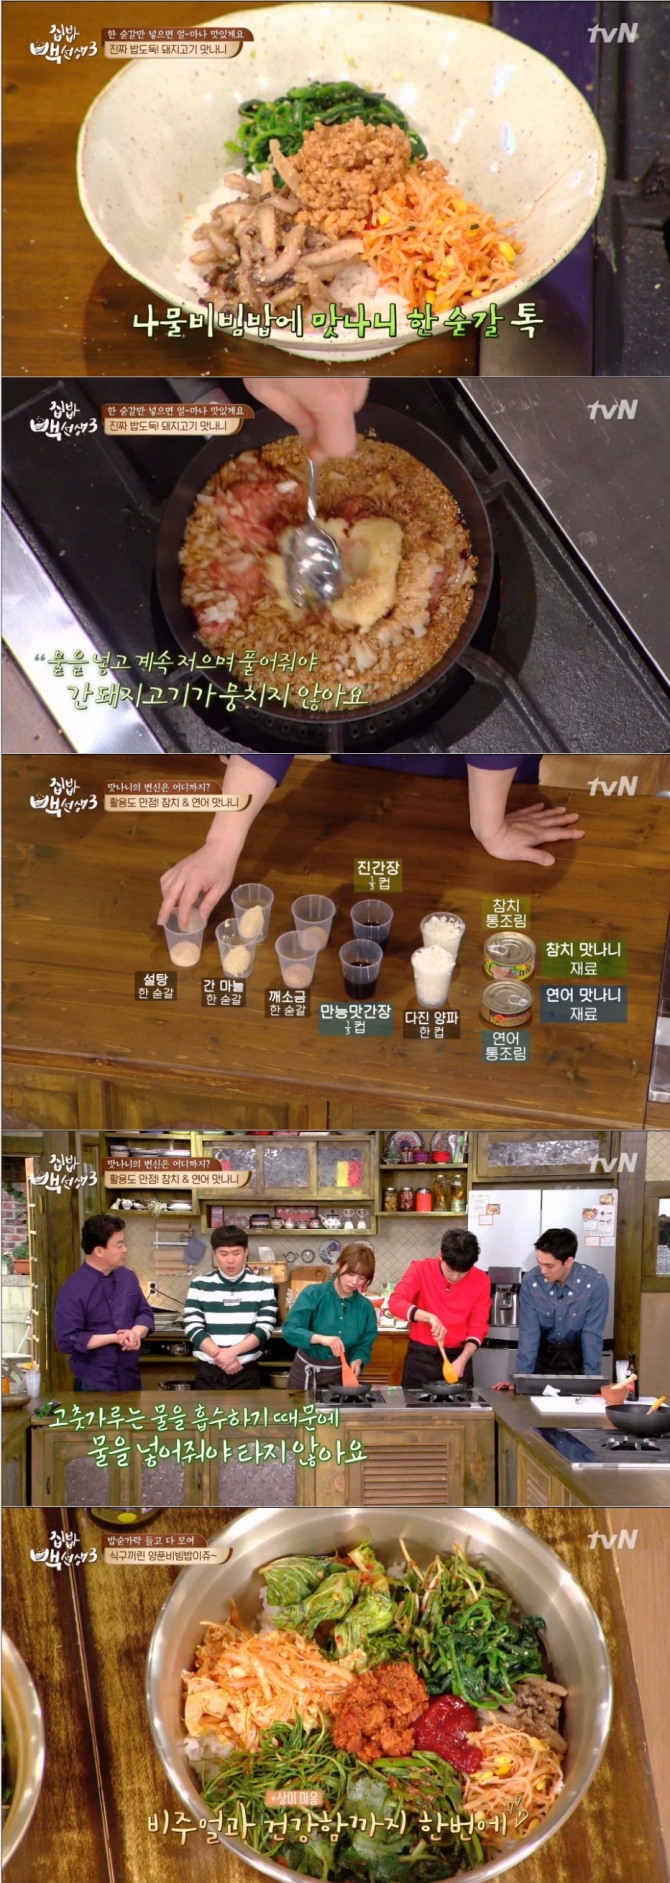 21일 방송된 tvN '집밥 백선생3'에서는 백종원이 양푼비빔밥 핵심 비법으로 봄나물 겉절이용 '만능양념장' 레시피와 '돼지고기만나니', '참치&amp;연어만나니' 레시피를 공개했다./사진=tvN 방송 캡처